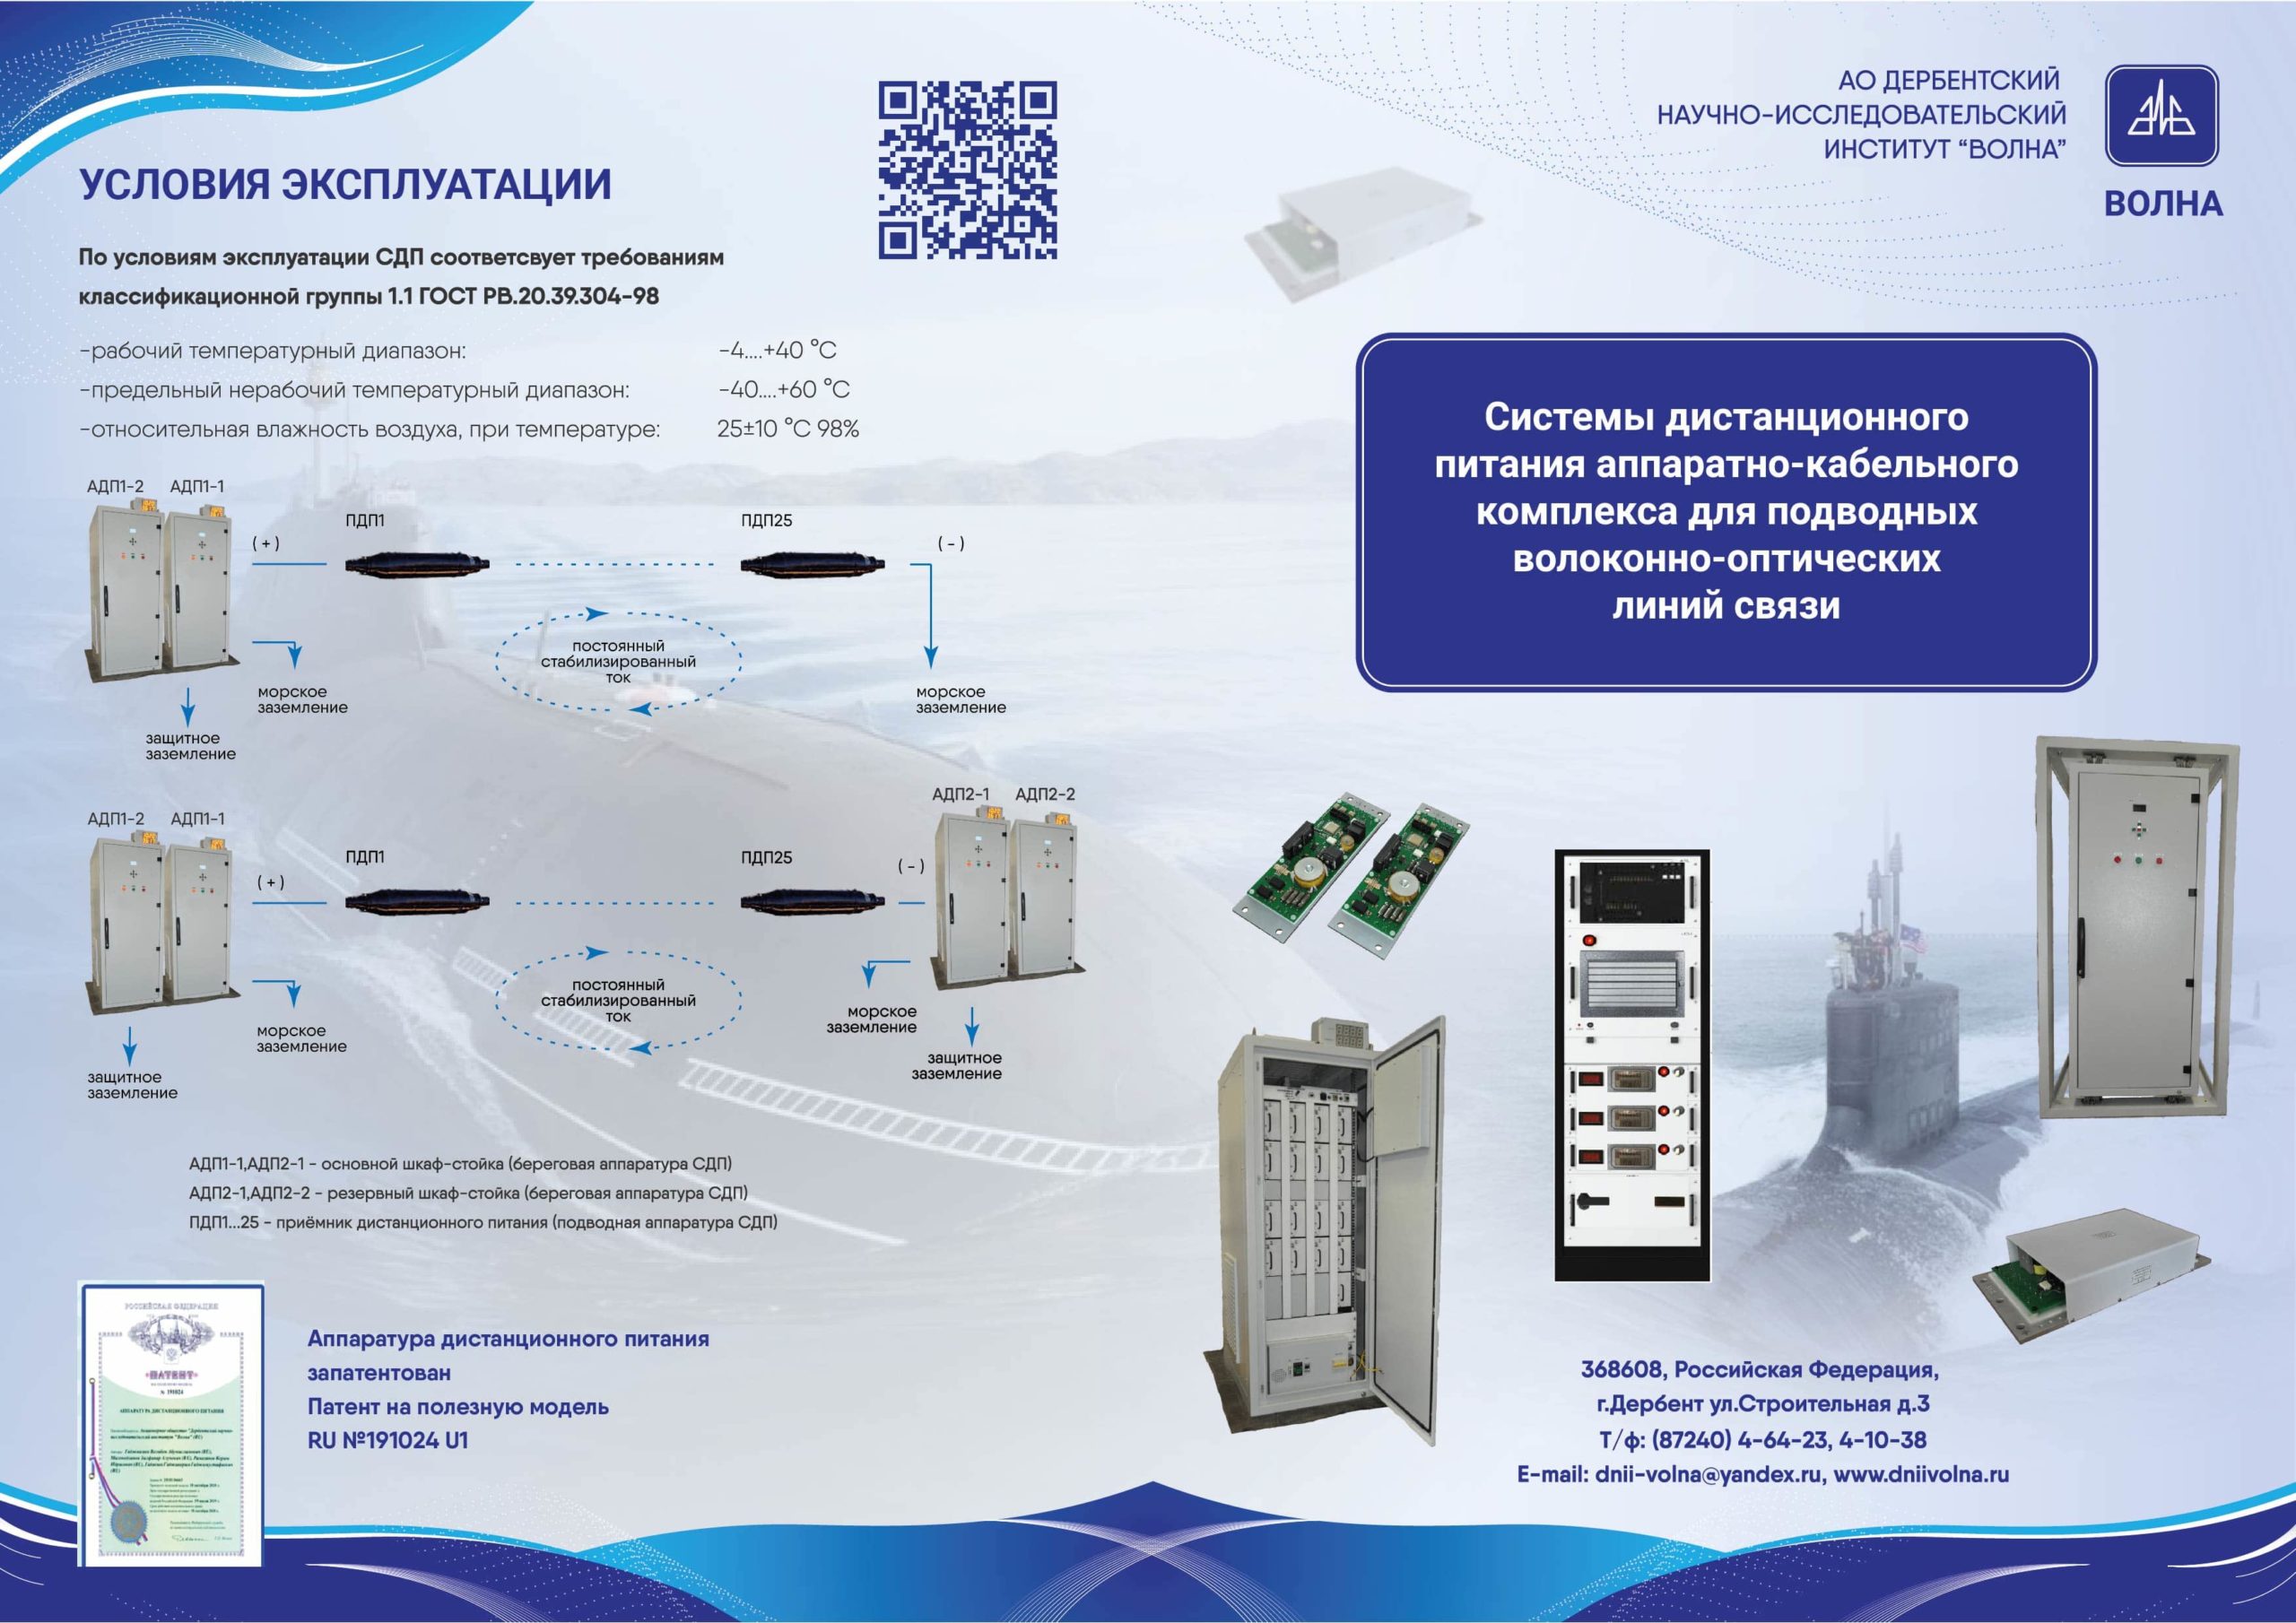 Системы дистанционного питания аппаратно-кабельного комплекса для подводных волоконно-оптических линий связи